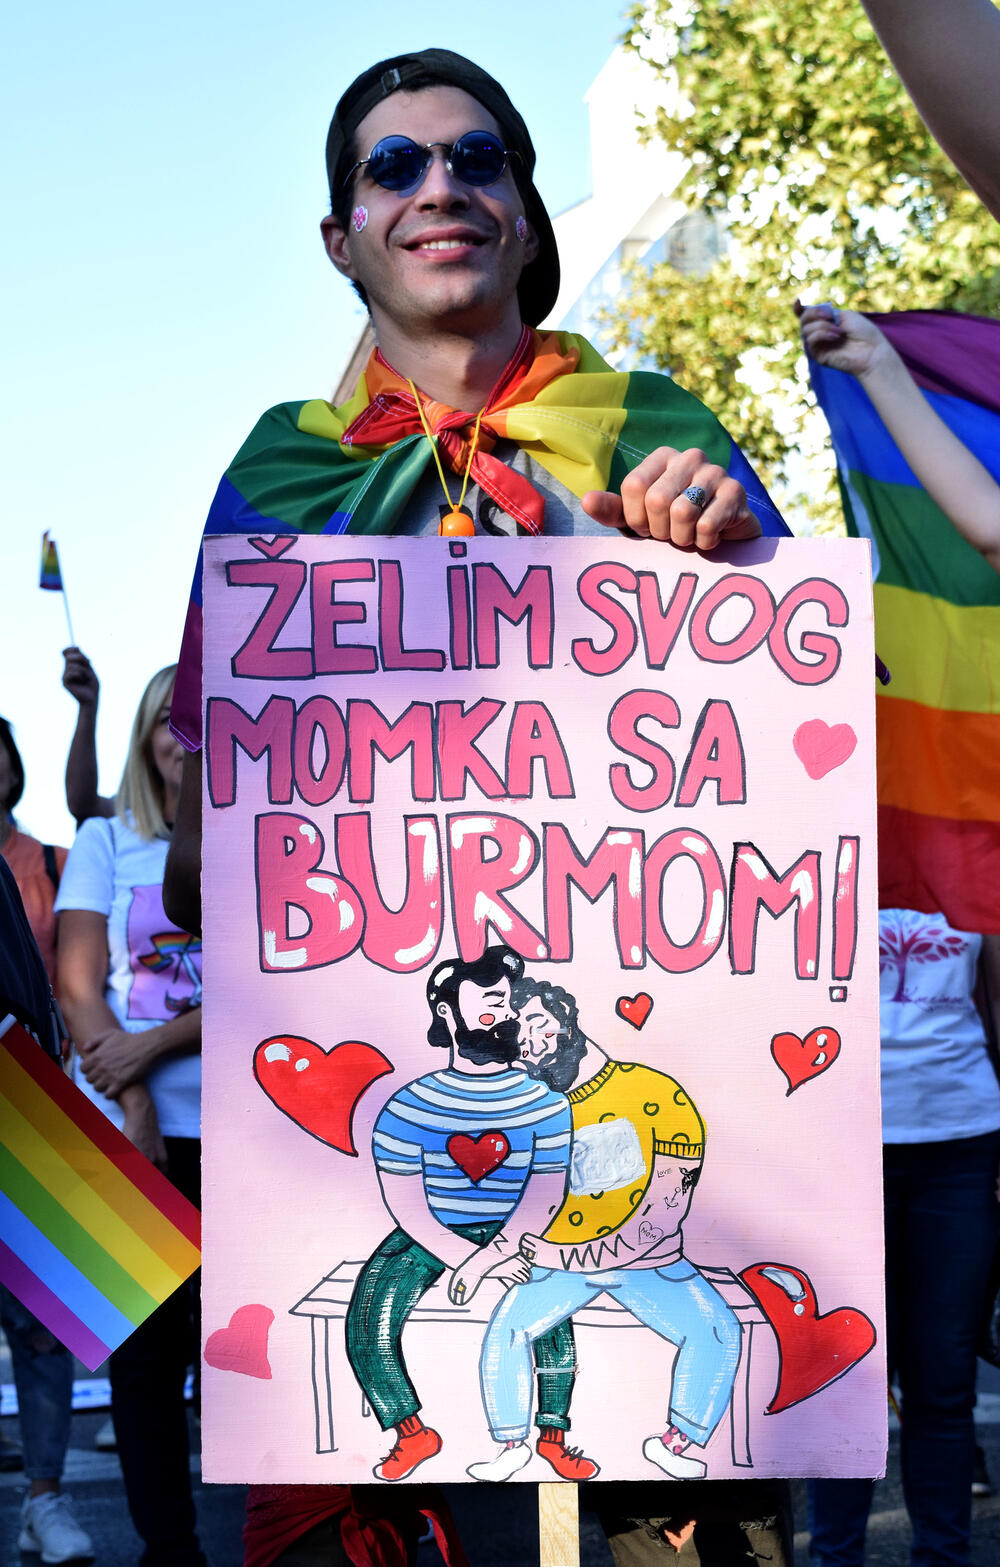 U Podgorici je održana sedma Povorka ponosa LGBTIQ osoba "Montenegro prajd" pod sloganom "Ne preko naših leđa".Organizatori su kazali da su se okupili kako bi poručili da neće pognuti glavu i da zahtijevaju osvajanje Zakona o životnom partnerstvu.